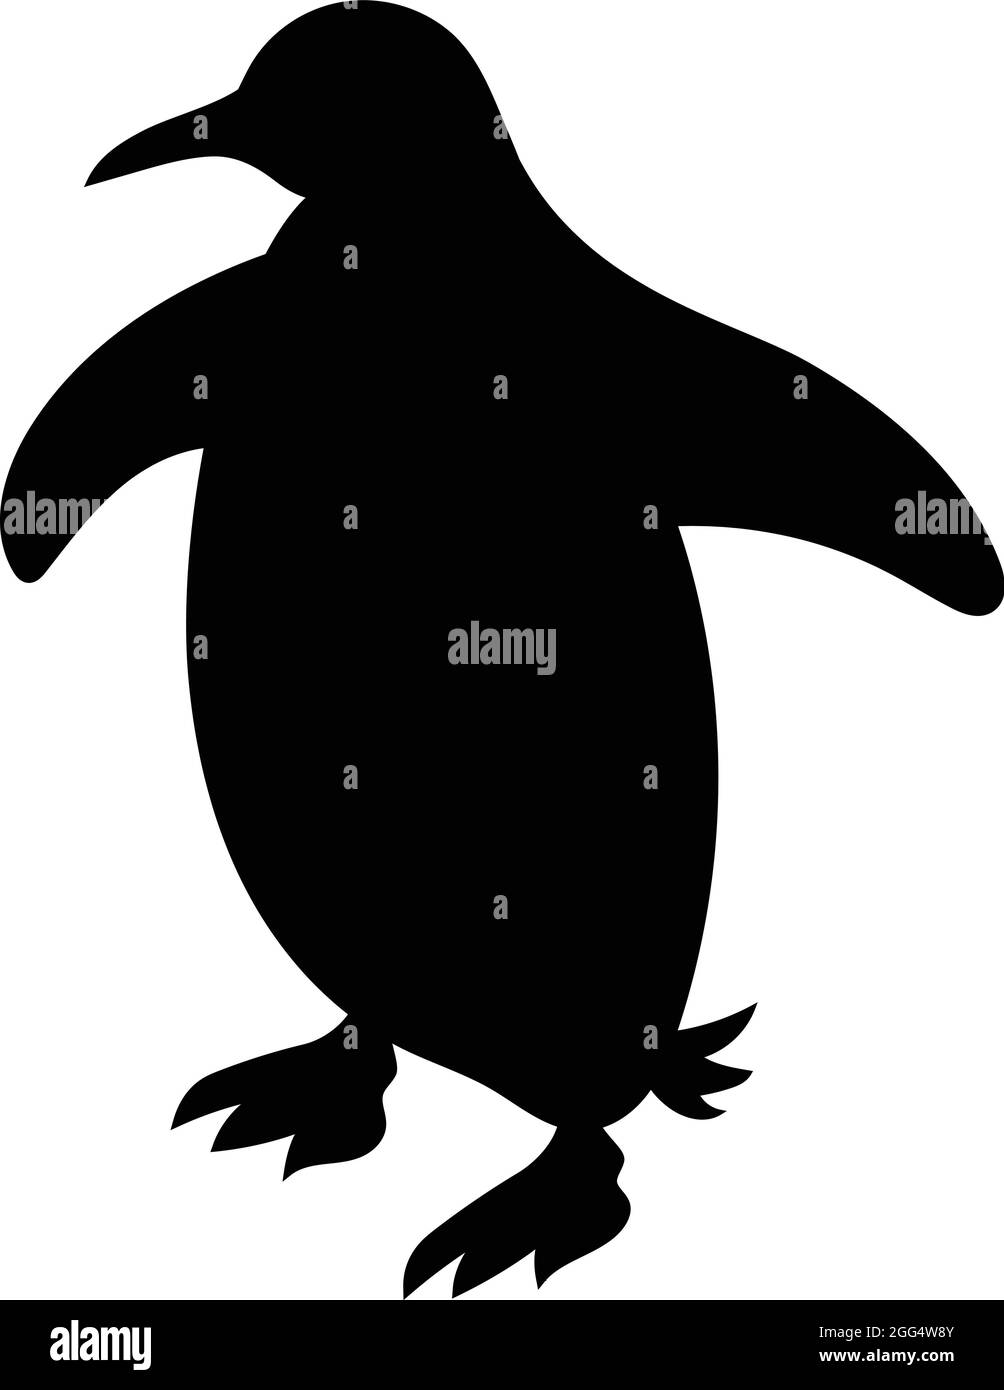 Randonnée à pied avec pingouins. Silhouette d'oiseau noir contre fond blanc sans ciel. Vecteur libre Illustration de Vecteur